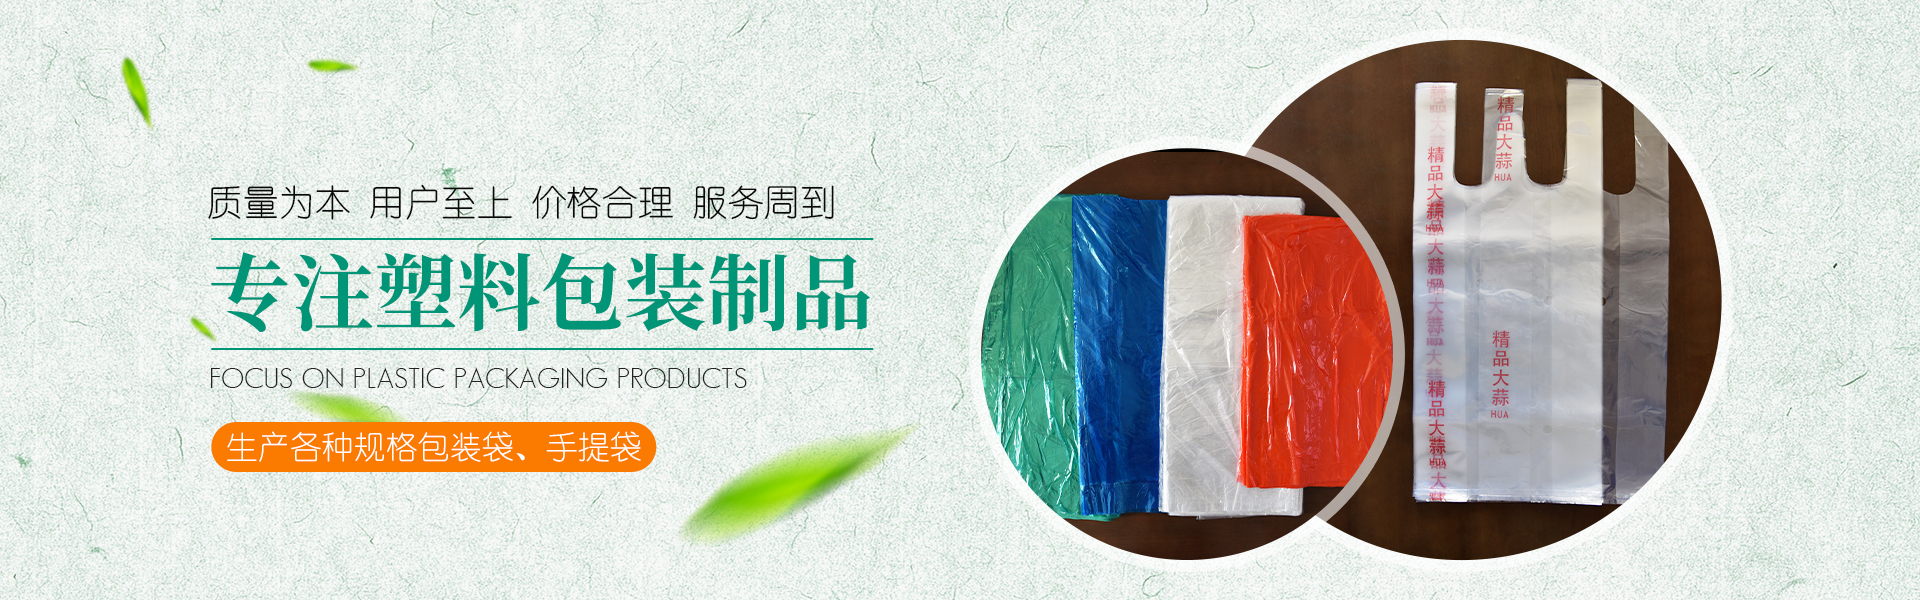 青州市金海源塑料包裝製品有限公司